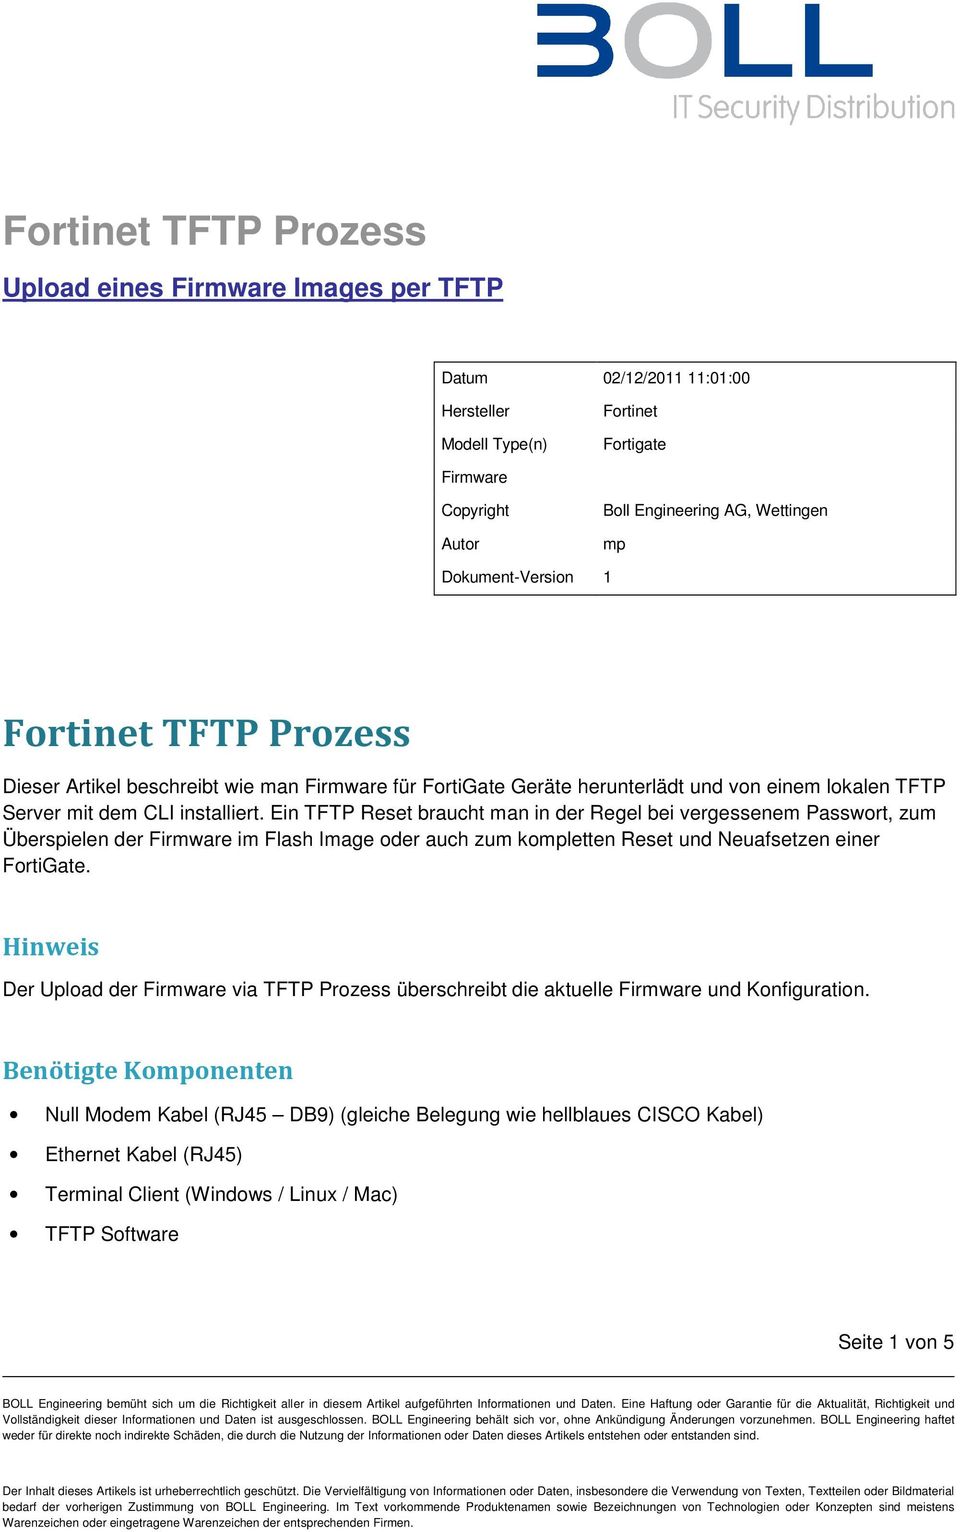 Ein TFTP Reset braucht man in der Regel bei vergessenem Passwort, zum Überspielen der Firmware im Flash Image oder auch zum kompletten Reset und Neuafsetzen einer FortiGate.